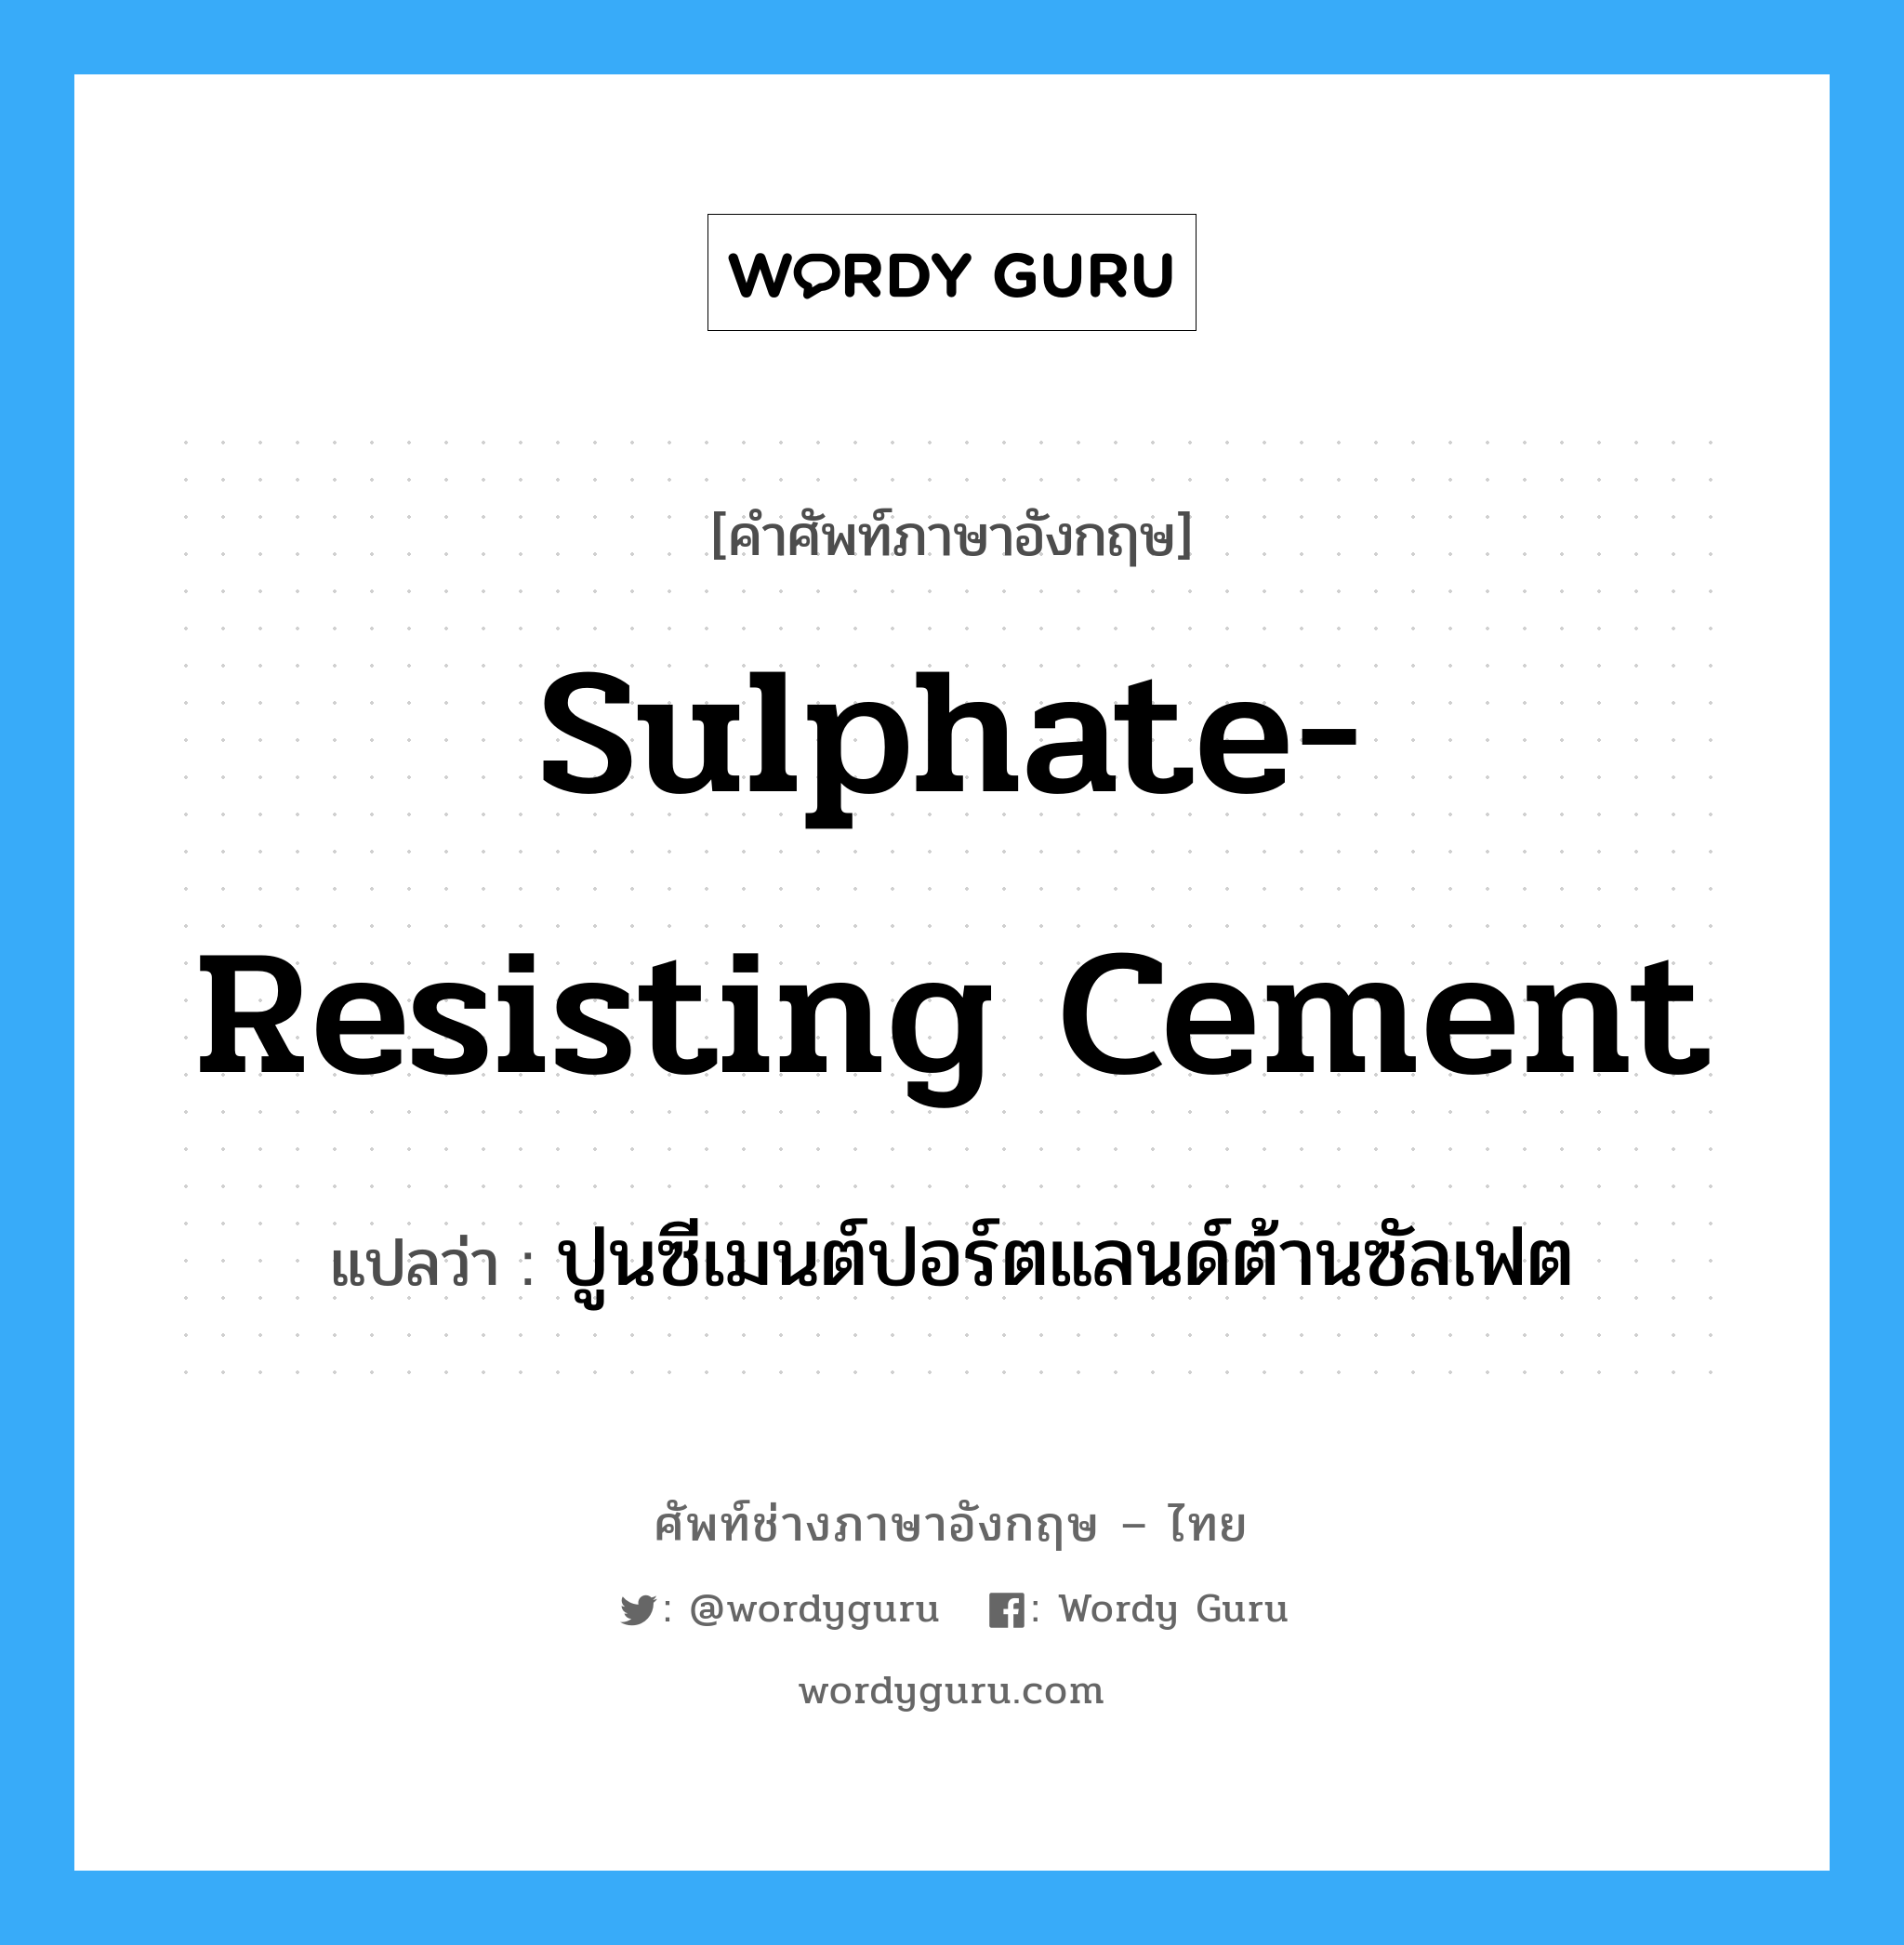 sulphate-resisting cement แปลว่า?, คำศัพท์ช่างภาษาอังกฤษ - ไทย sulphate-resisting cement คำศัพท์ภาษาอังกฤษ sulphate-resisting cement แปลว่า ปูนซีเมนต์ปอร์ตแลนด์ต้านซัลเฟต